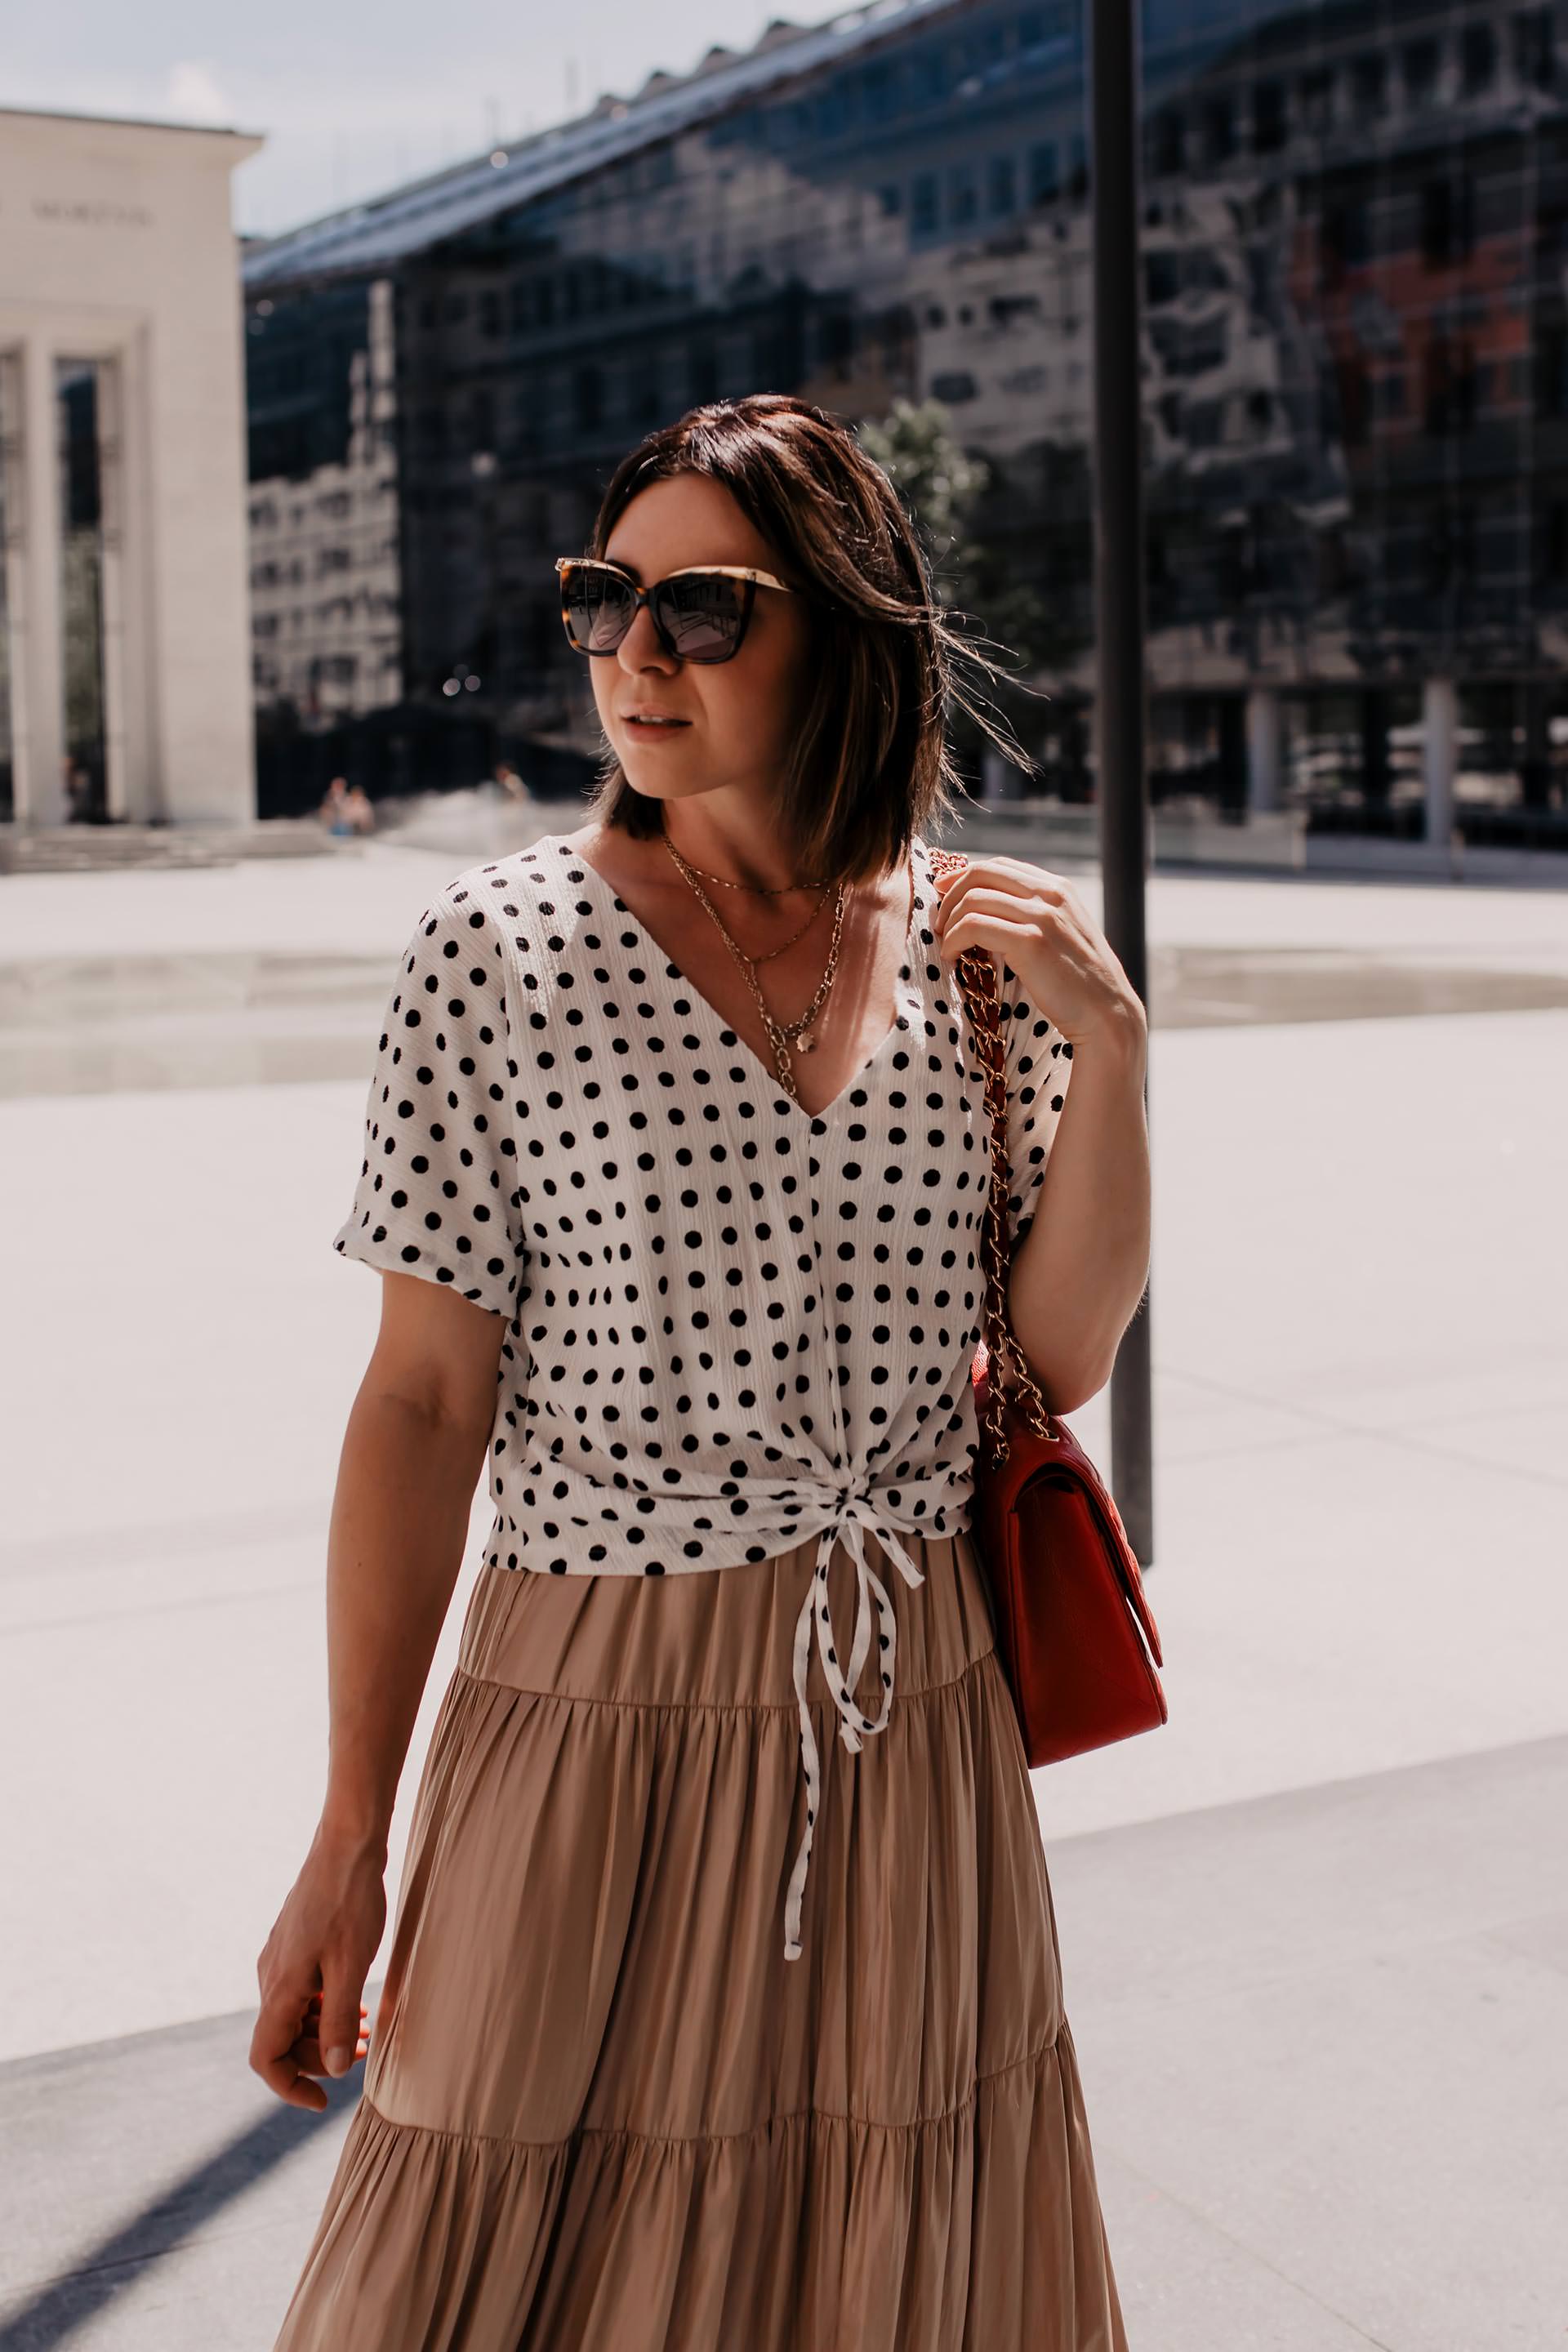 Der Polka Dots Trend ist auch 2019 ein Dauerbrenner unter den Modetrends. Wie du den Trend richtig kombinierst, passende Outfit-Ideen und hilfreiche Styling-Tipps findest du jetzt auf meinem Fashion Blog www.whoismocca.com #polkadots #modetrends #outfitideen #sommertrends